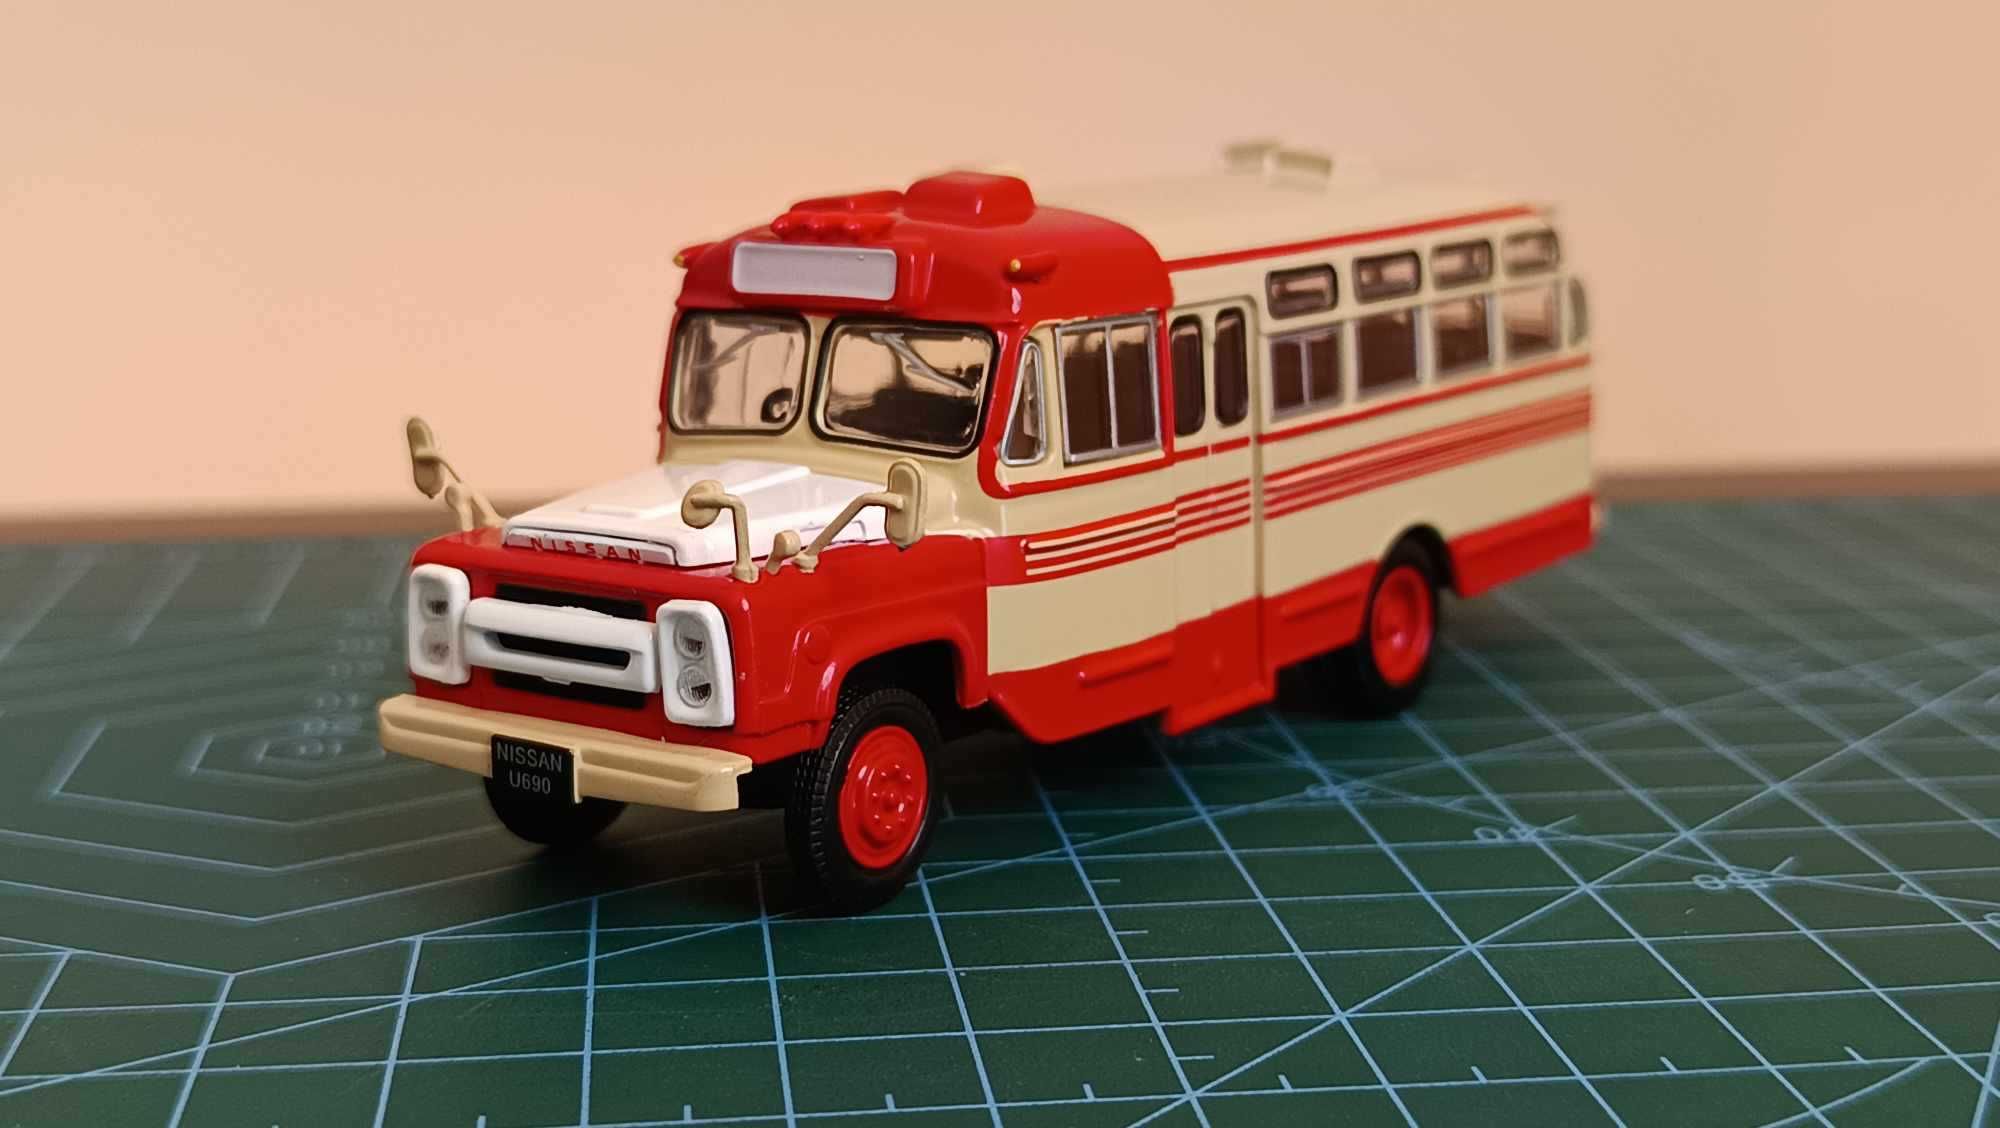 Nissan U690/Kultowe Autobusy PRL 1:72